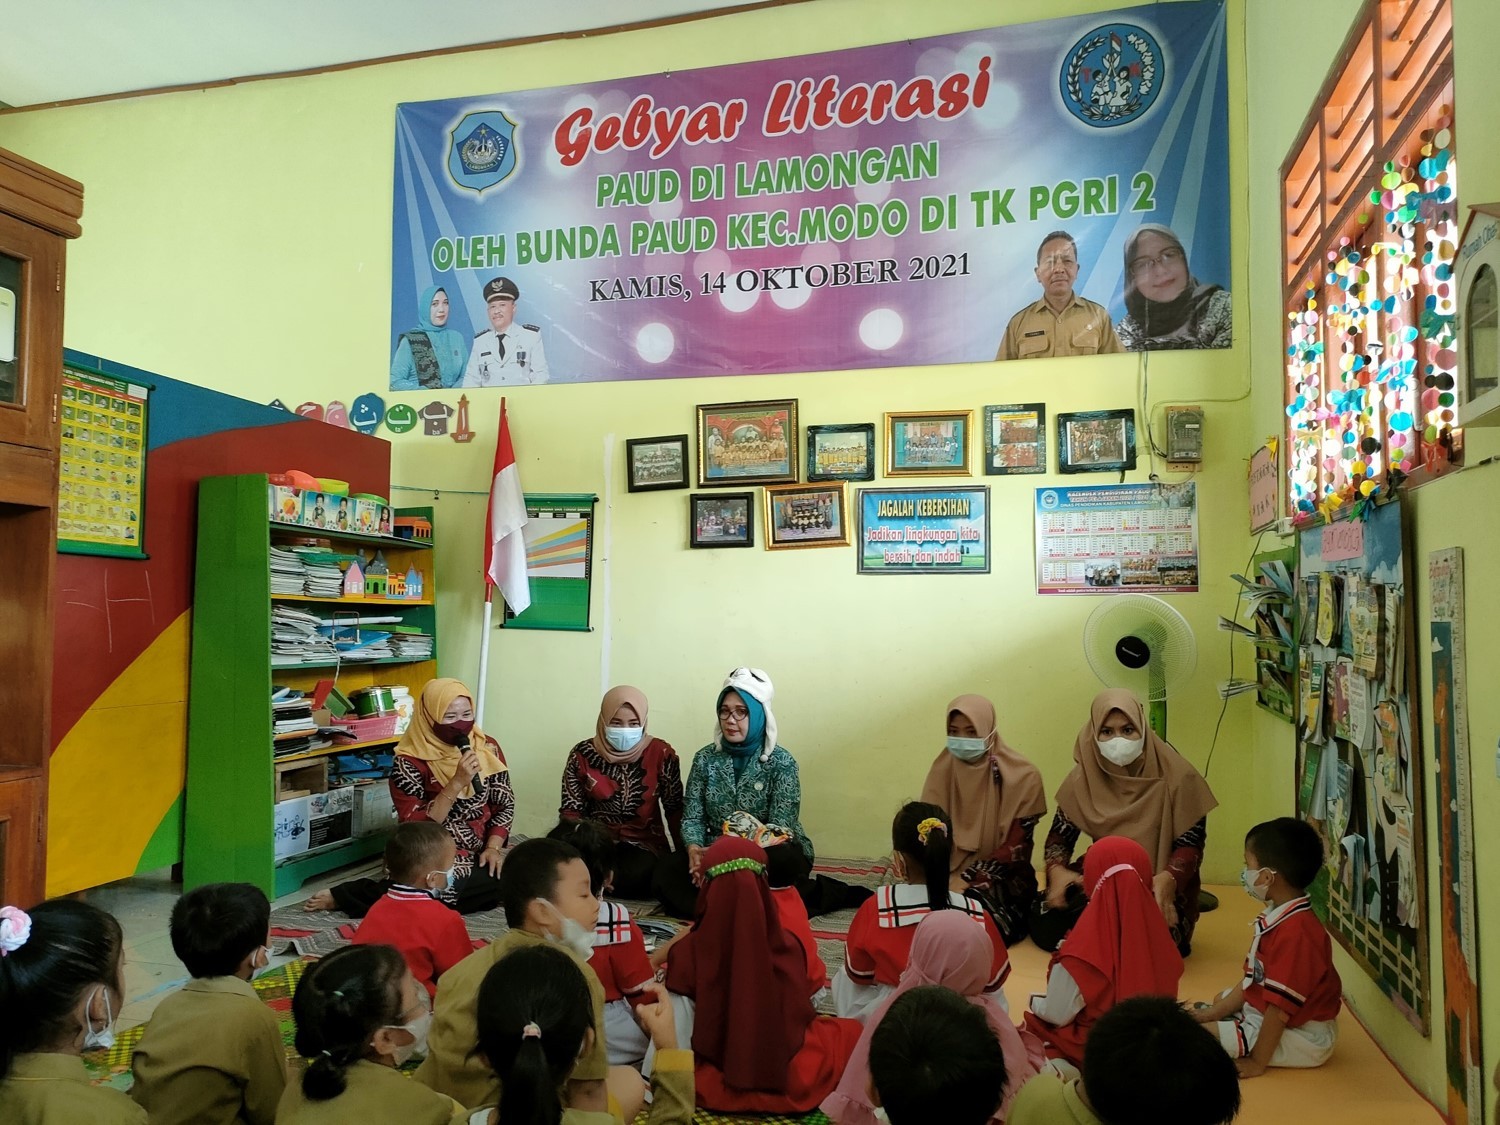 Gebyar Literasi oleh Bunda PAUD Kecamatan Modo di TK PGRI 2